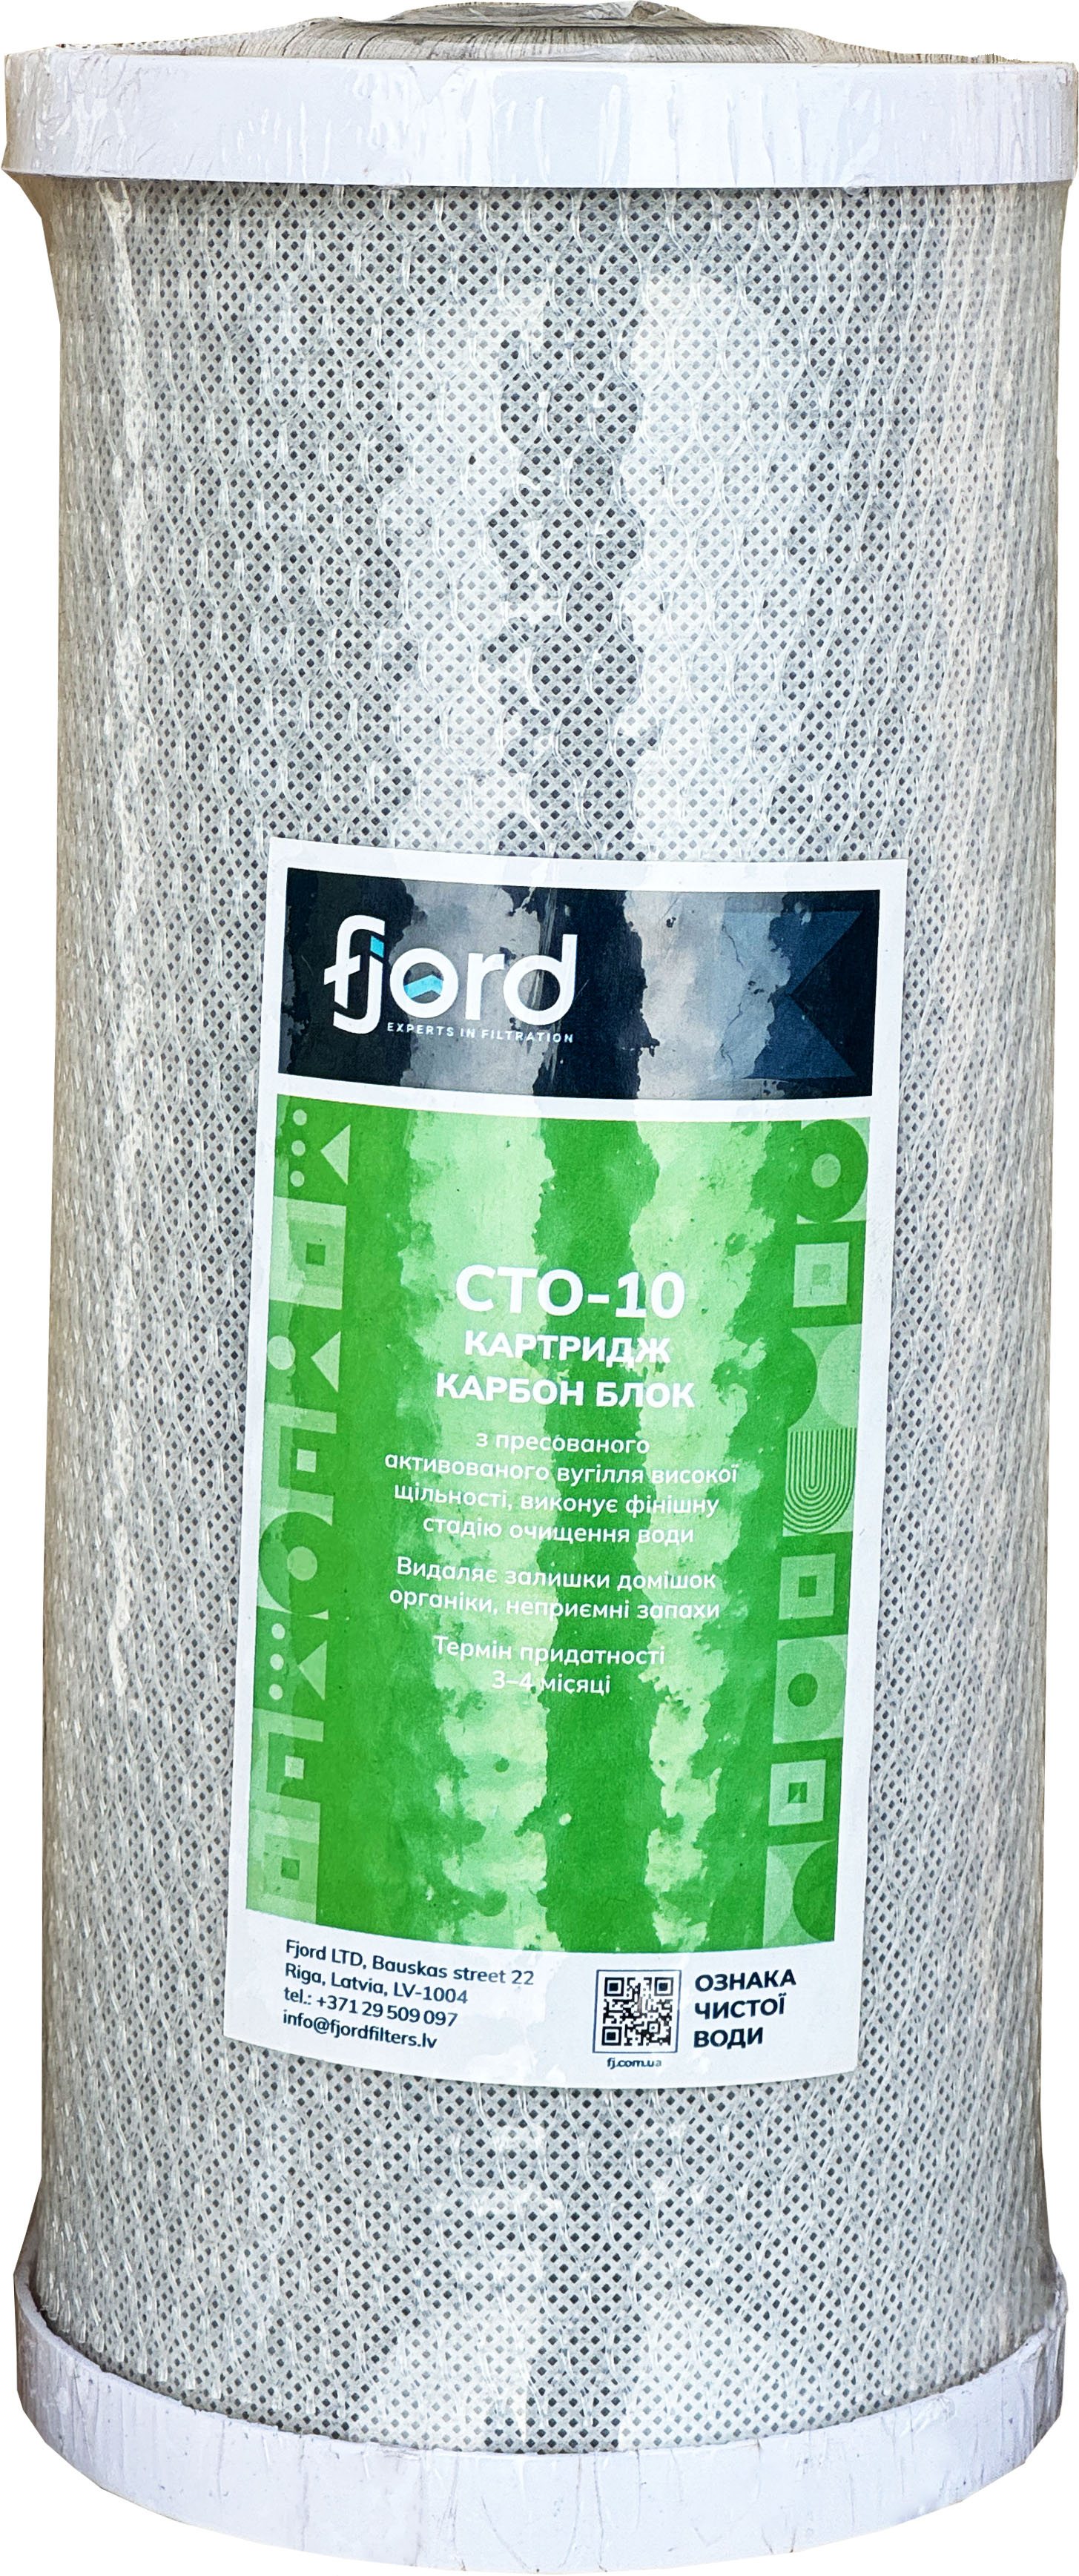 Картридж від пестицидів Fjord CTO-BB10 (вугілля)